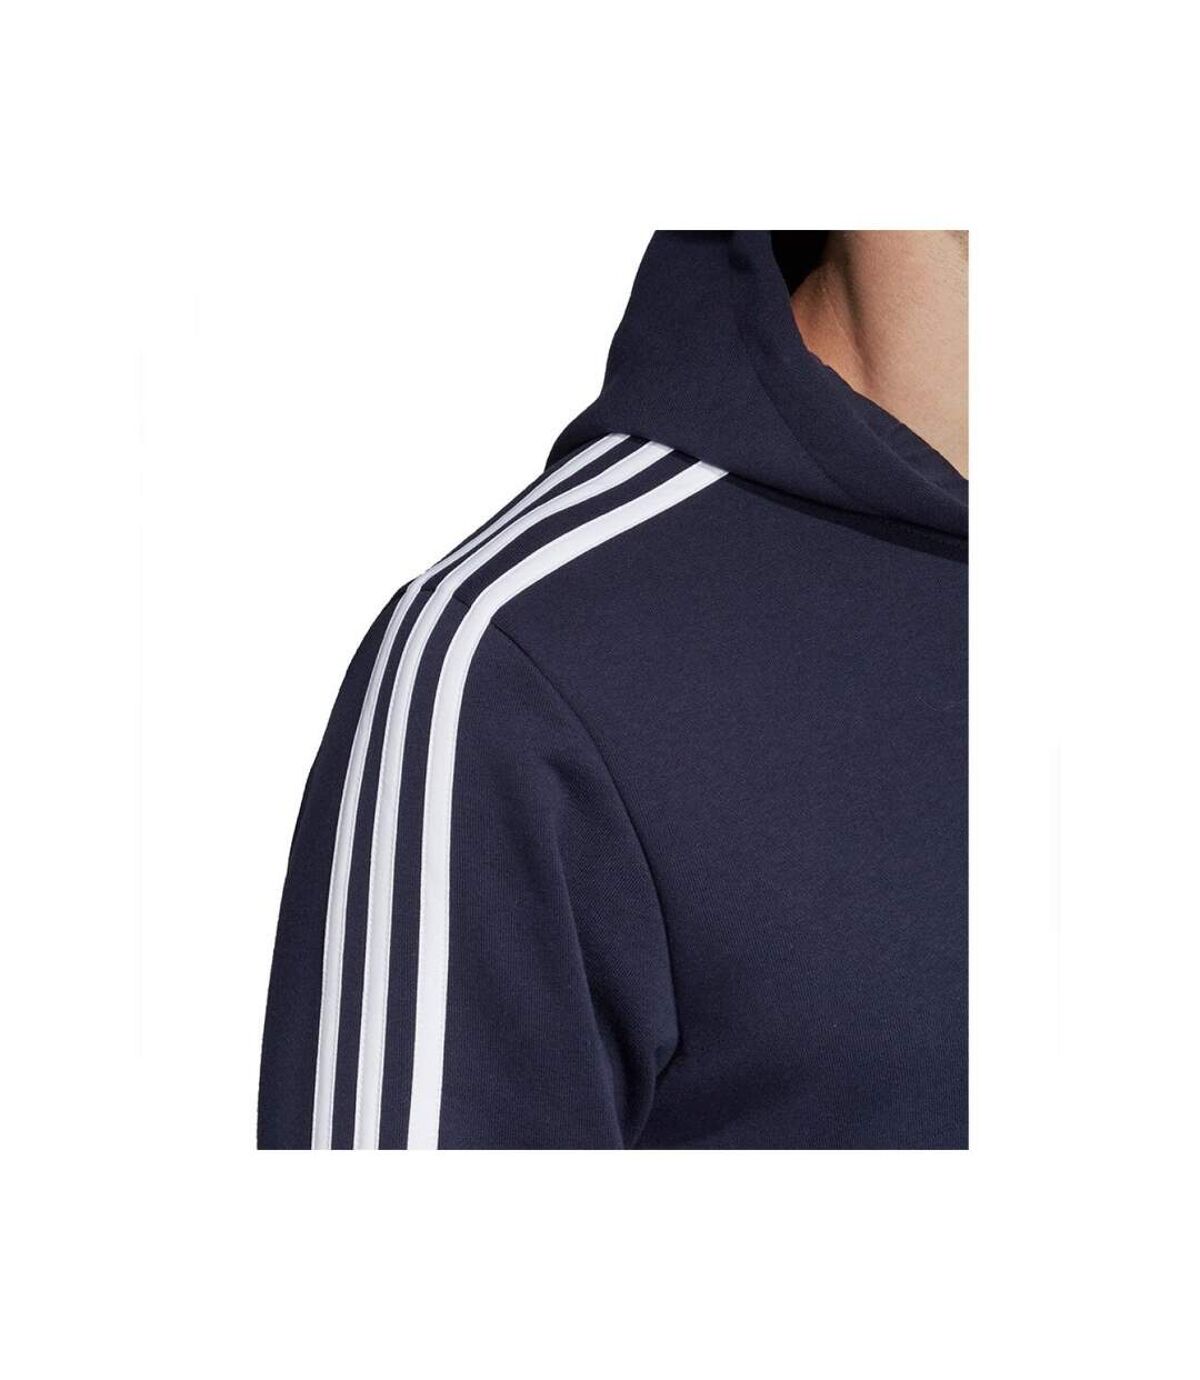 Sweat zippée à capuche   -  Adidas - Homme